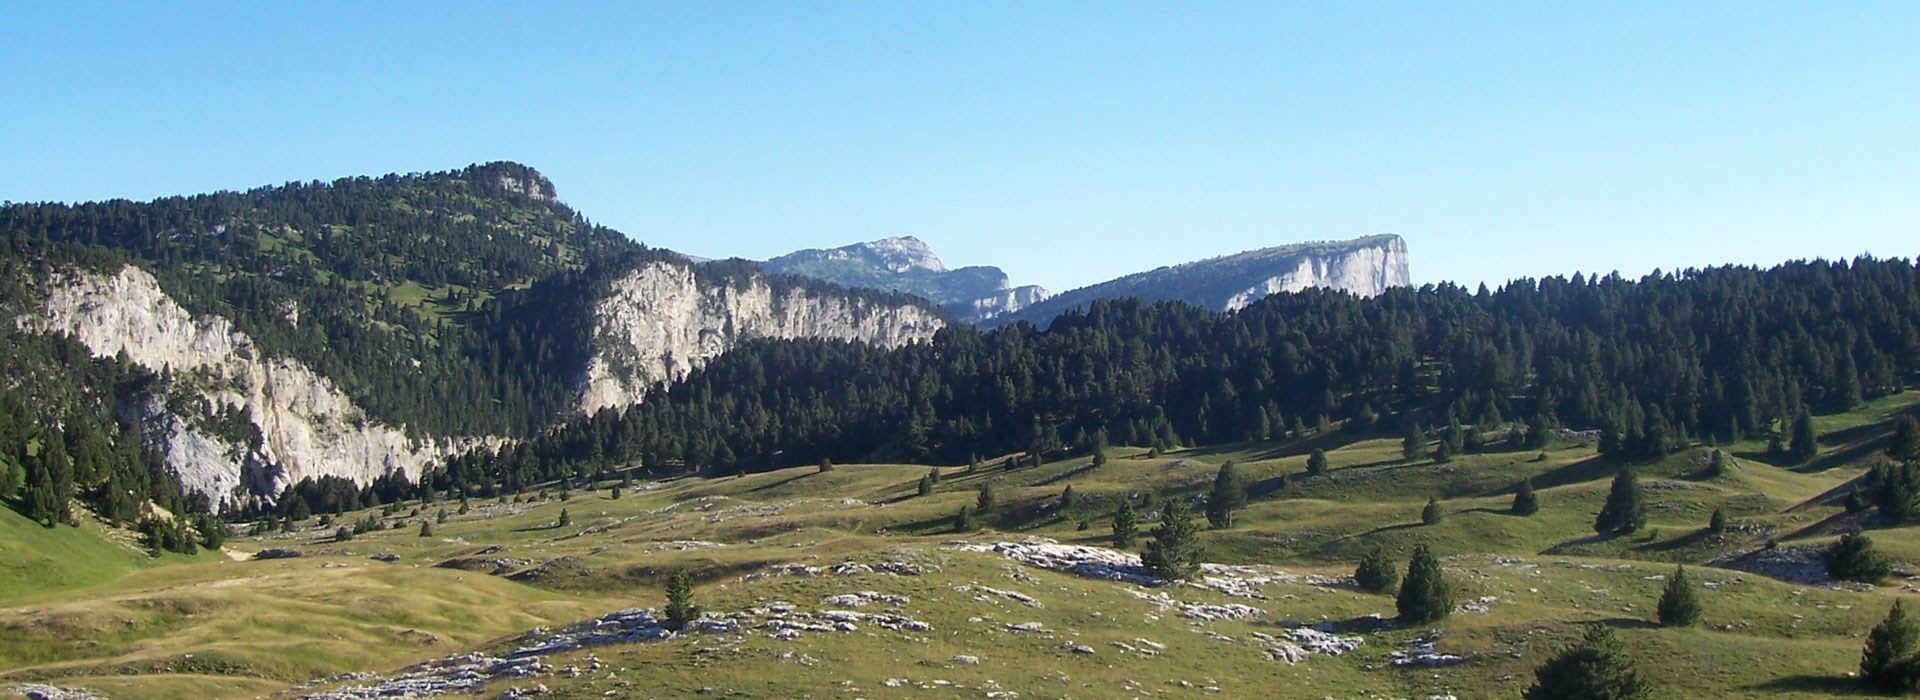 Visiter Hauts plateaux du Vercors  - Rhône-Alpes